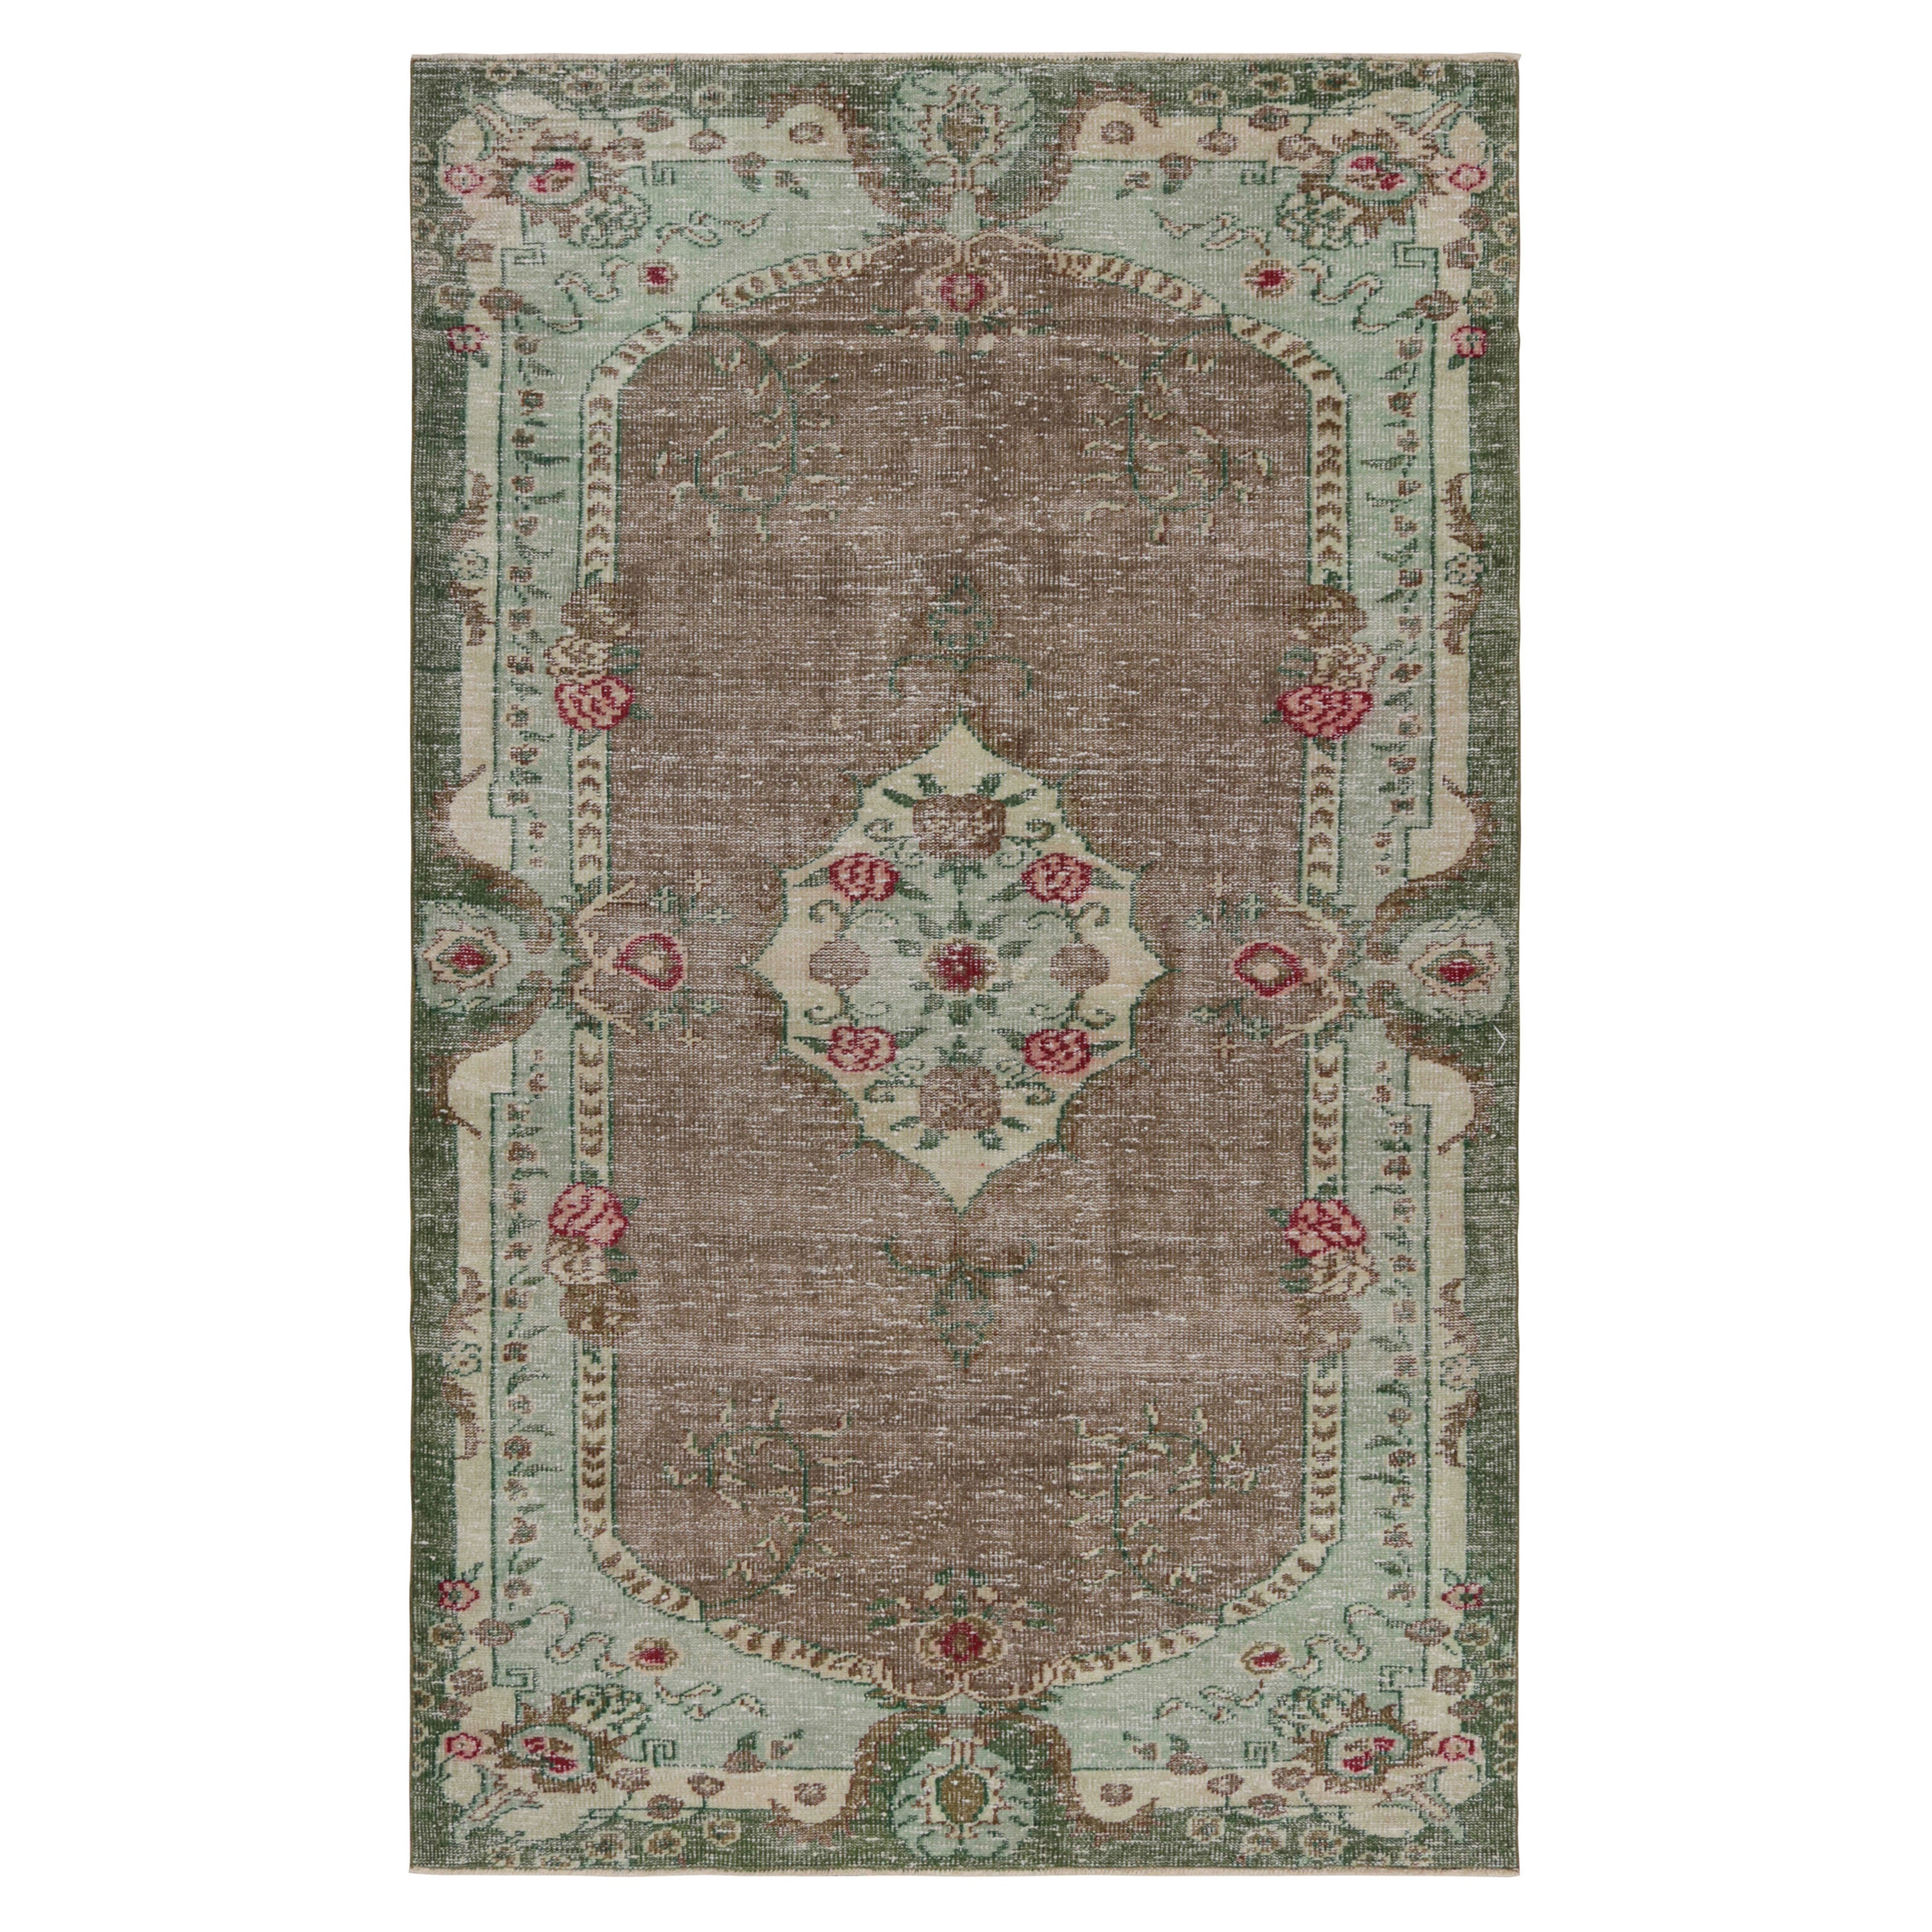 Vintage Zeki Müren Teppich in Brown mit grünem Blumenmedaillon, von Rug & Kilim